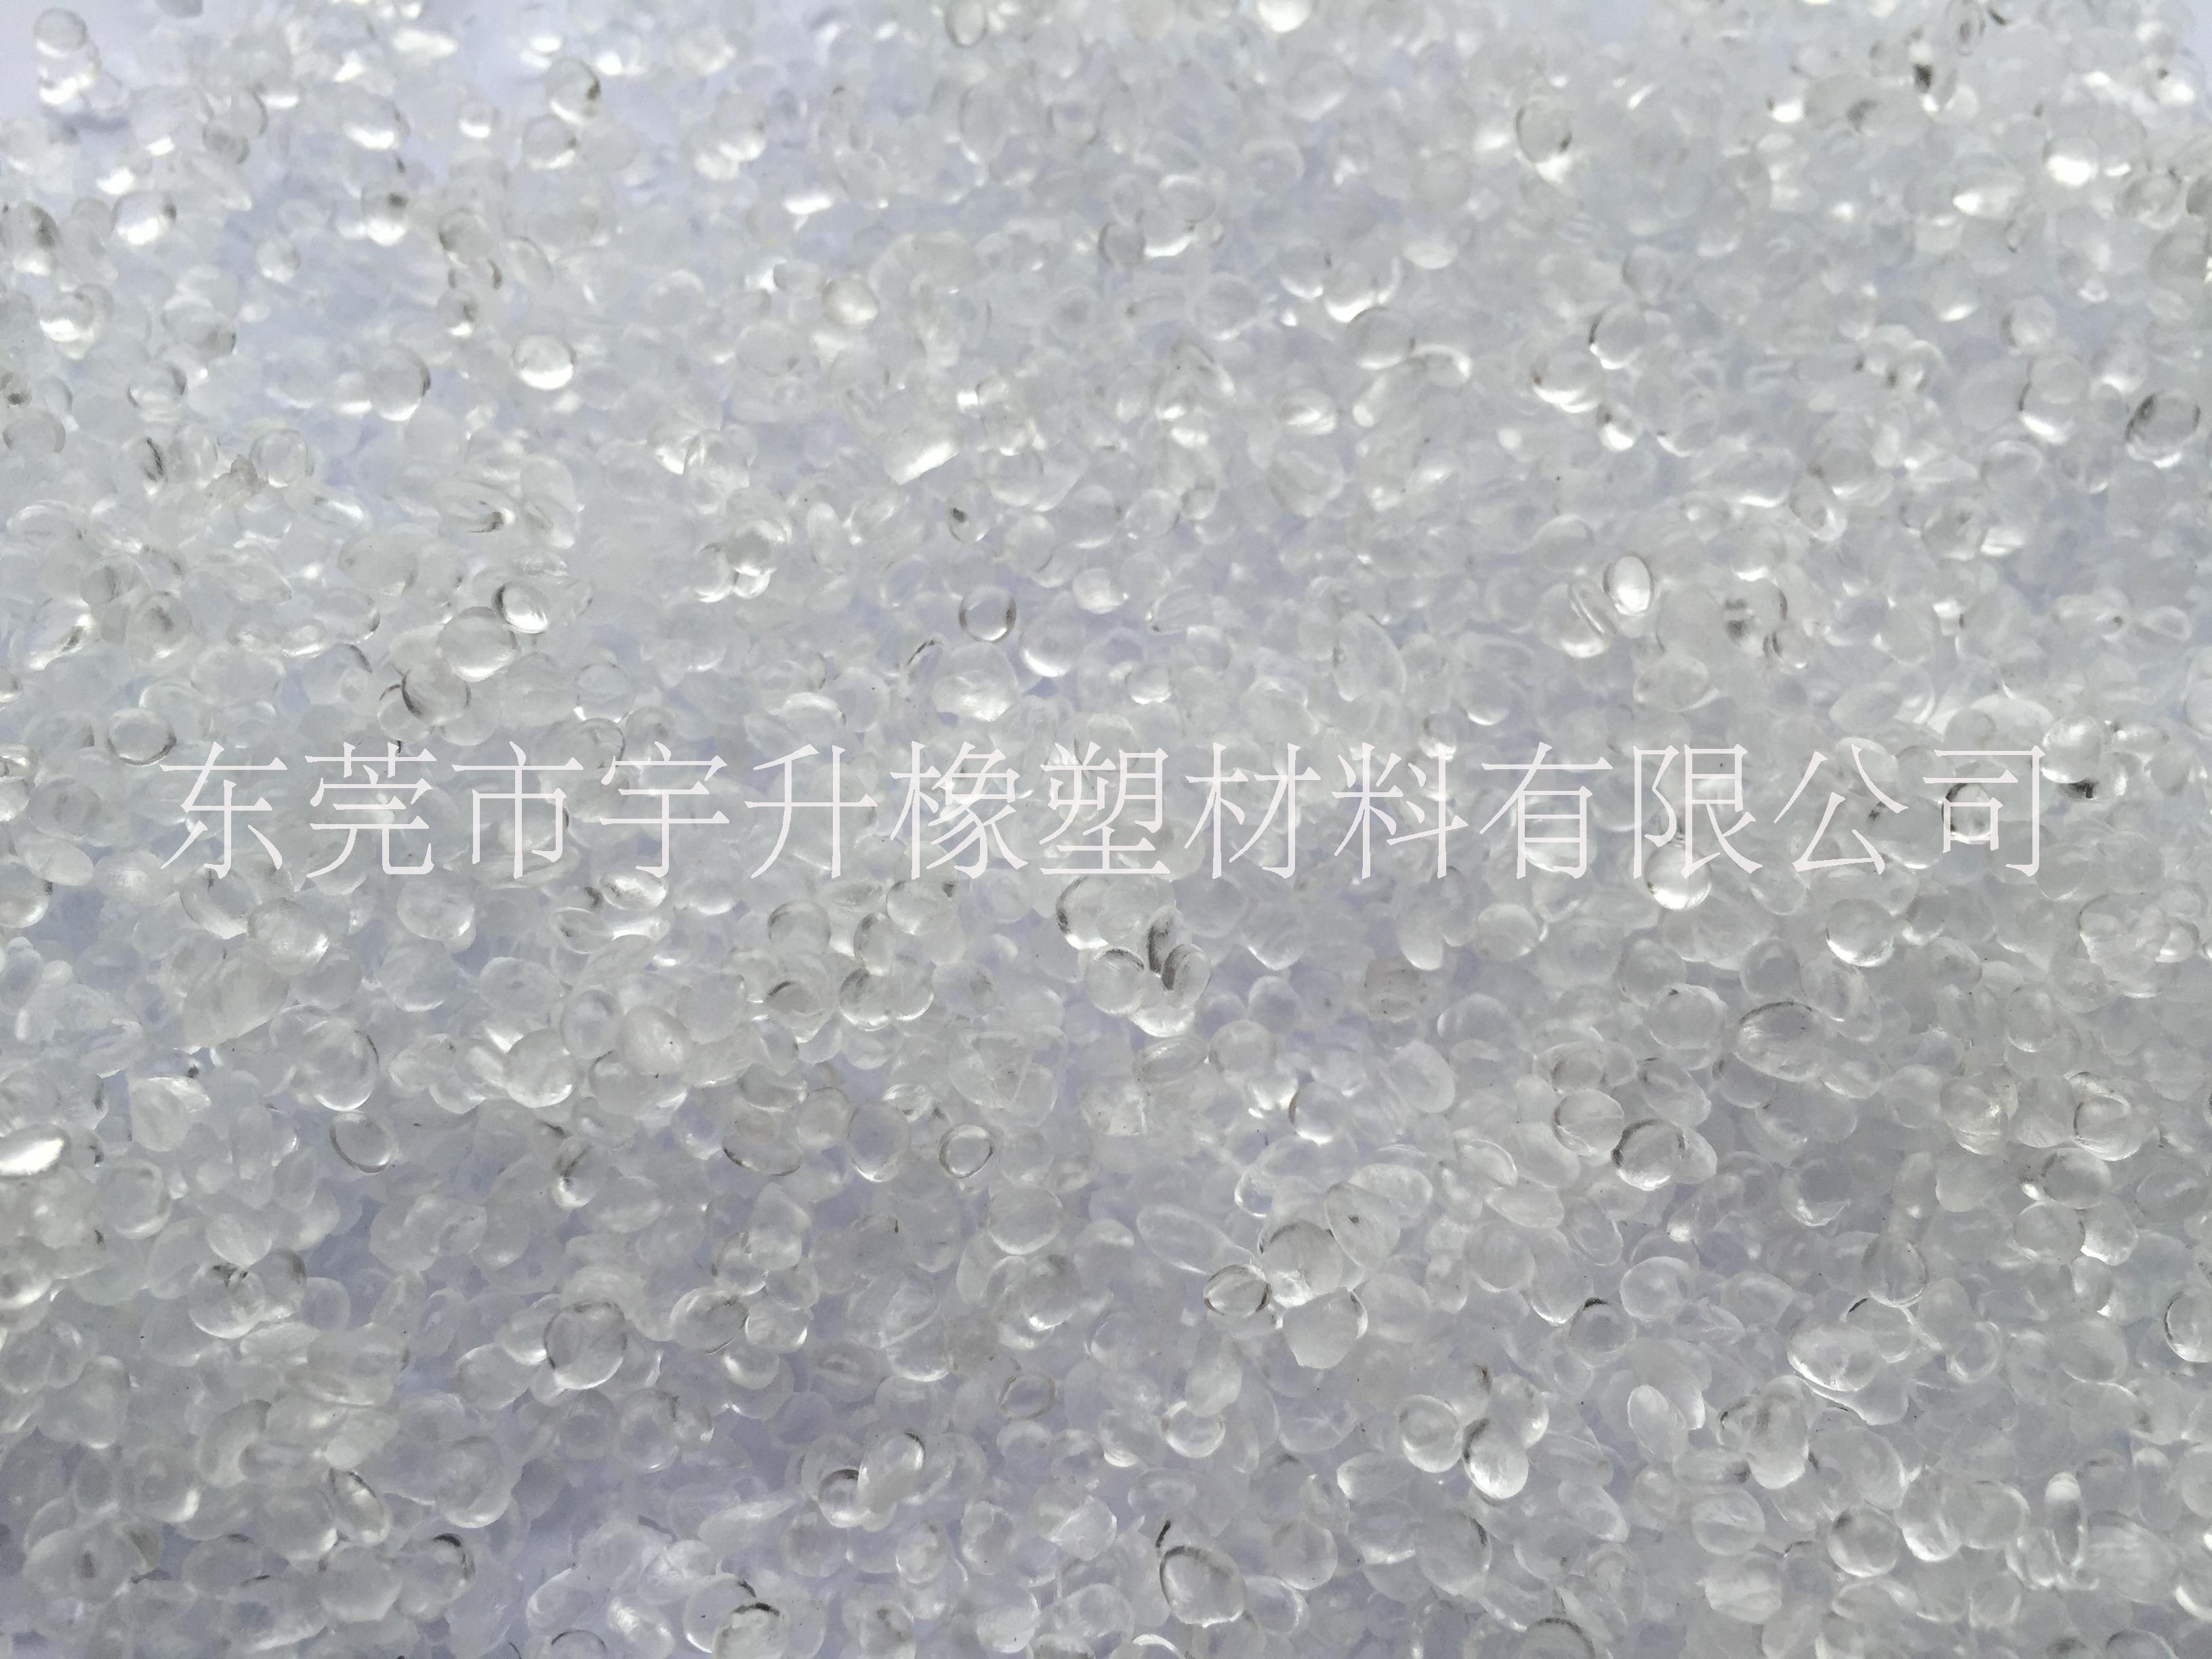 TPE东莞厂家专业生产高透明颗粒sebs颗粒tpe图片